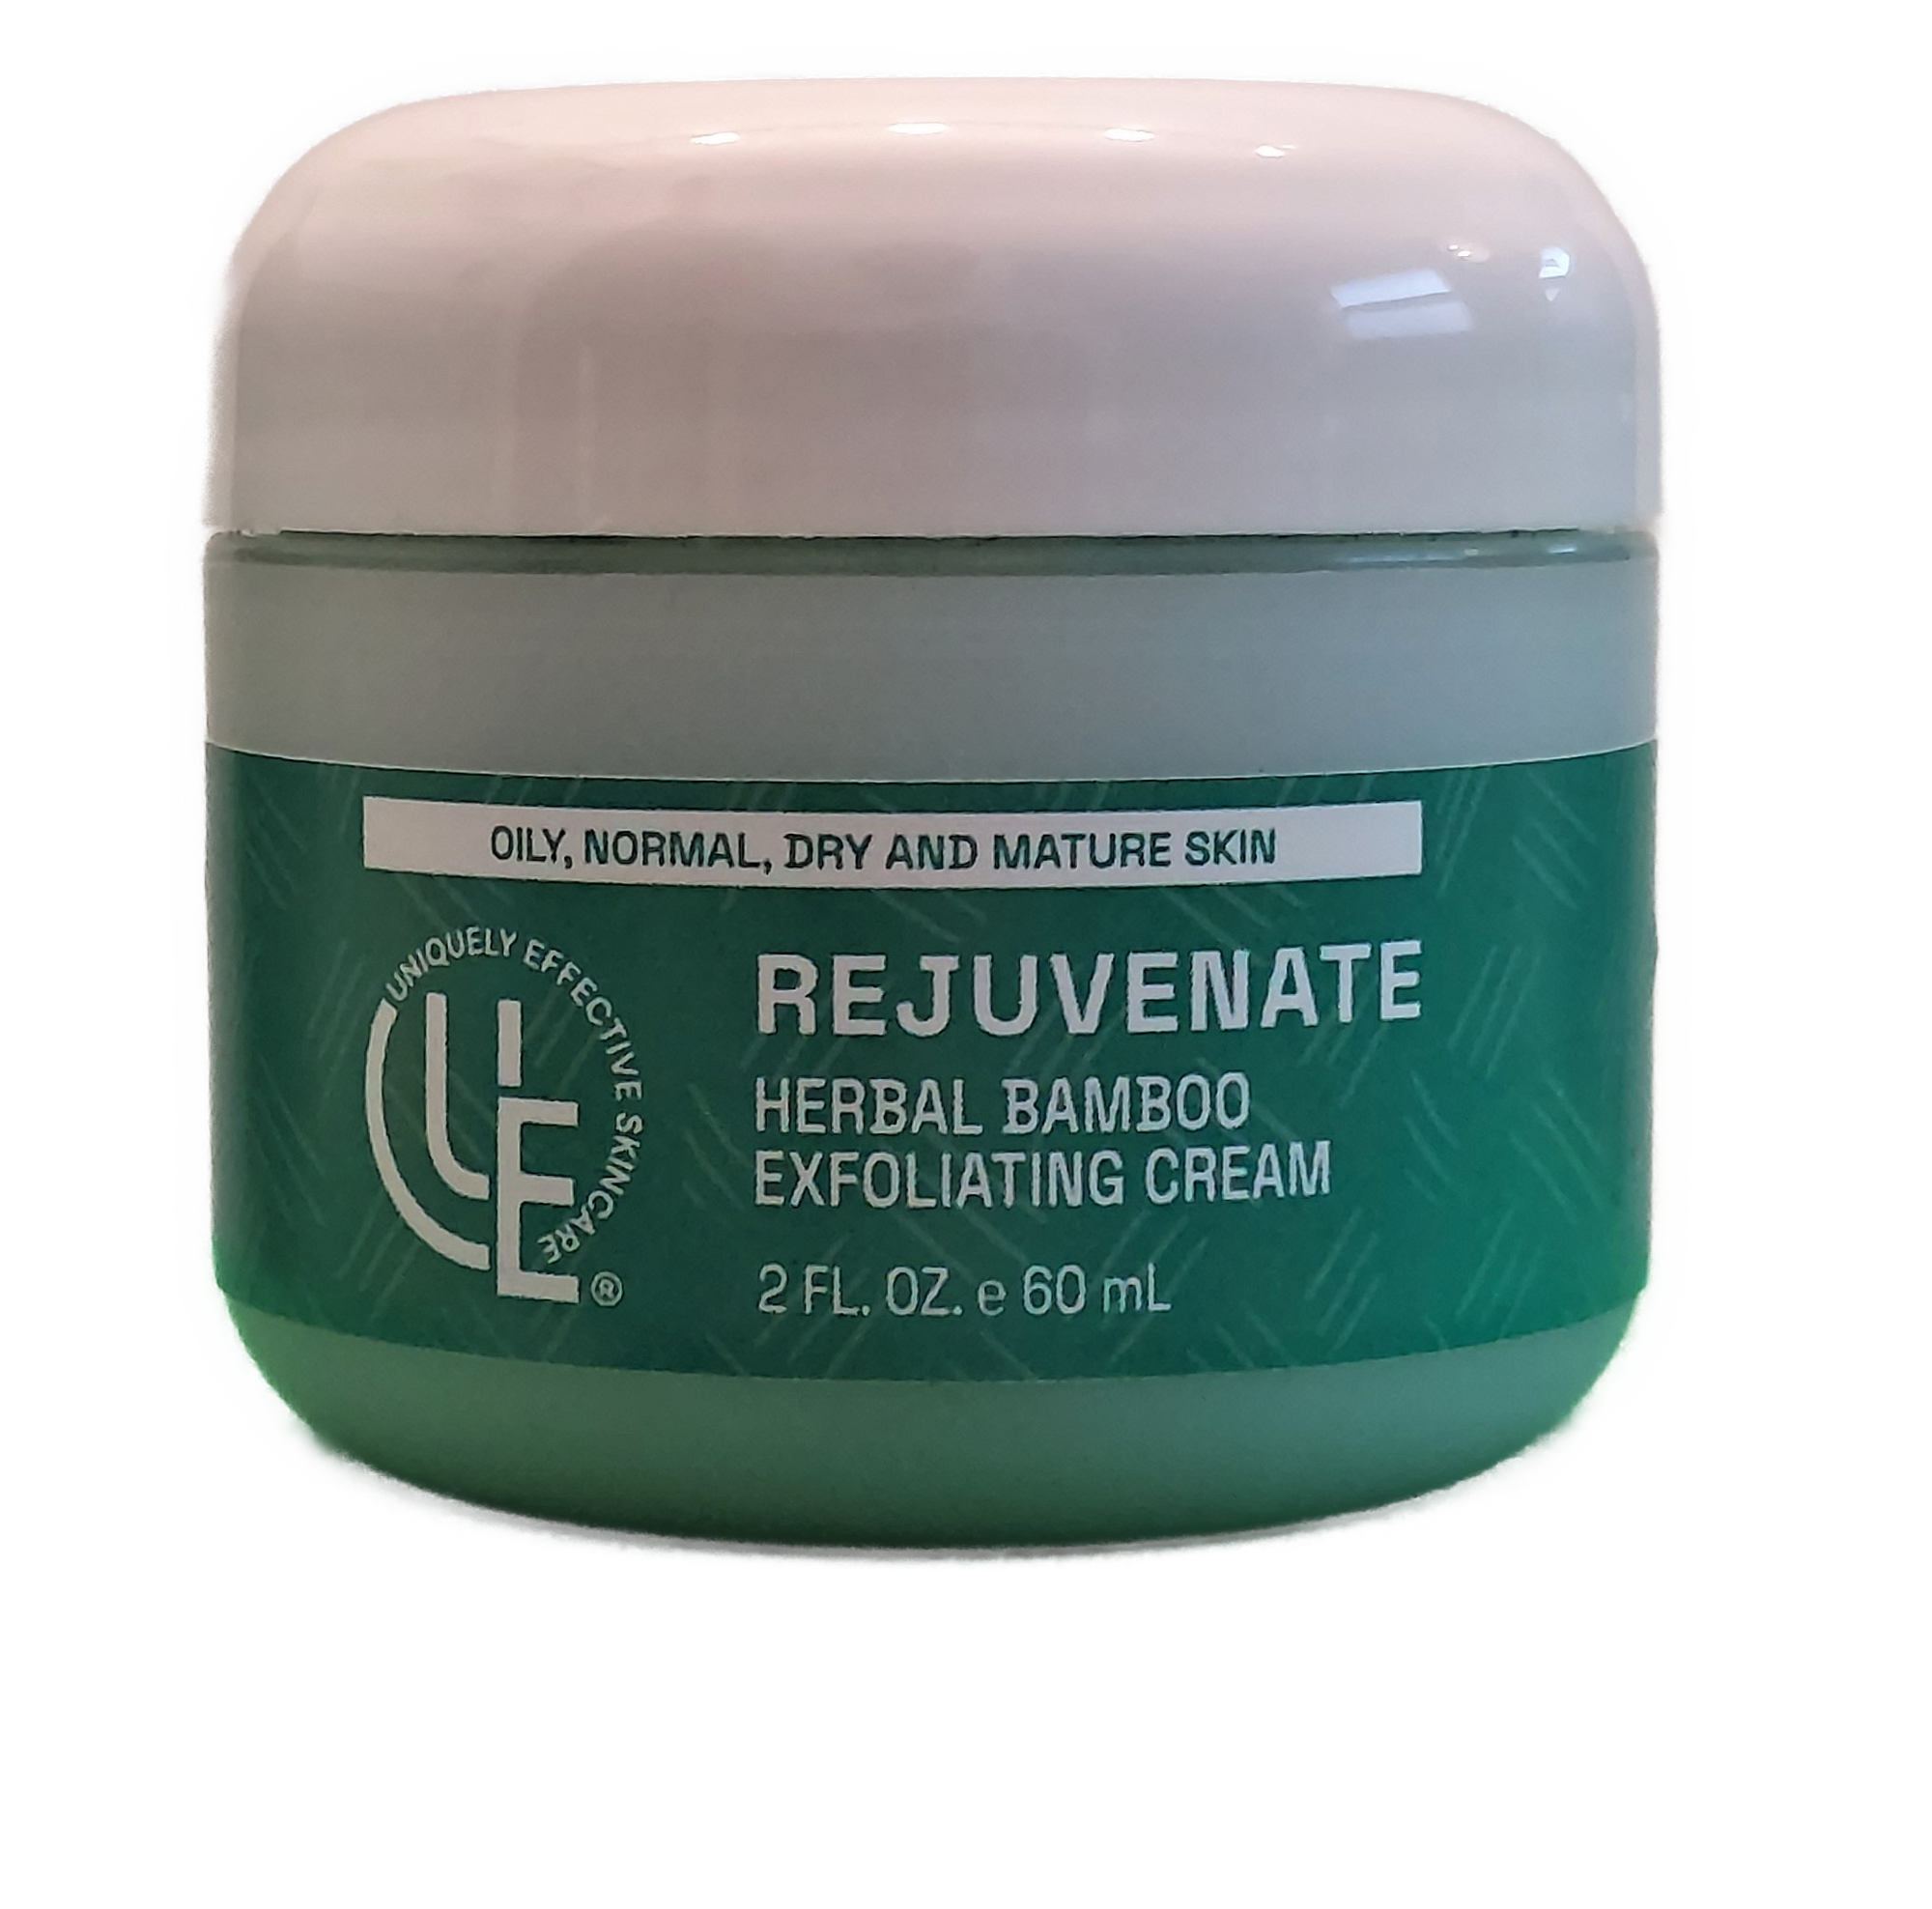 2 oz. jar of Rejuvenate Herbal Exfoliating Cream